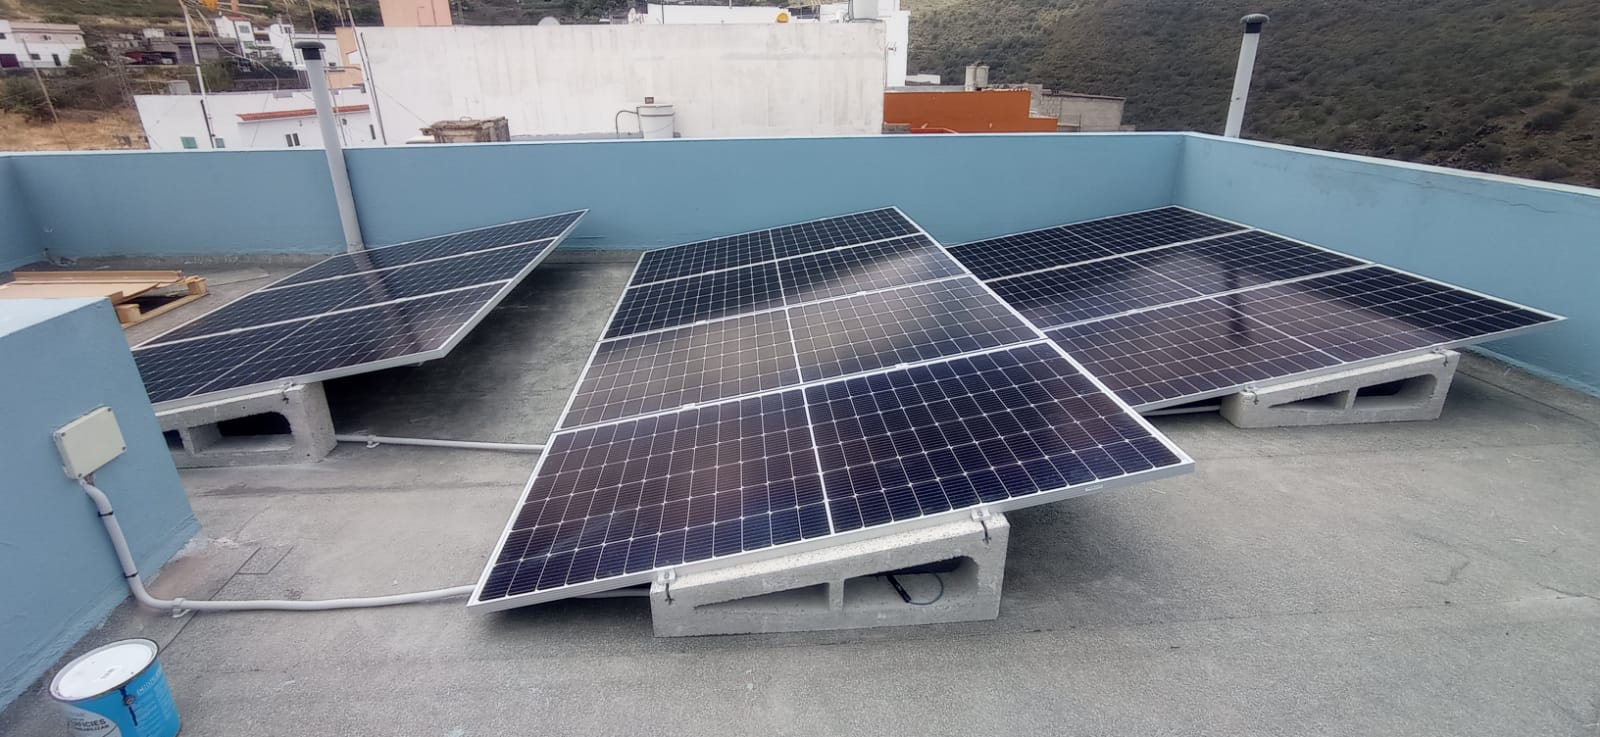 Instalación fotovoltaica en San Lorenzo, Las Palmas (Gran Canaria)